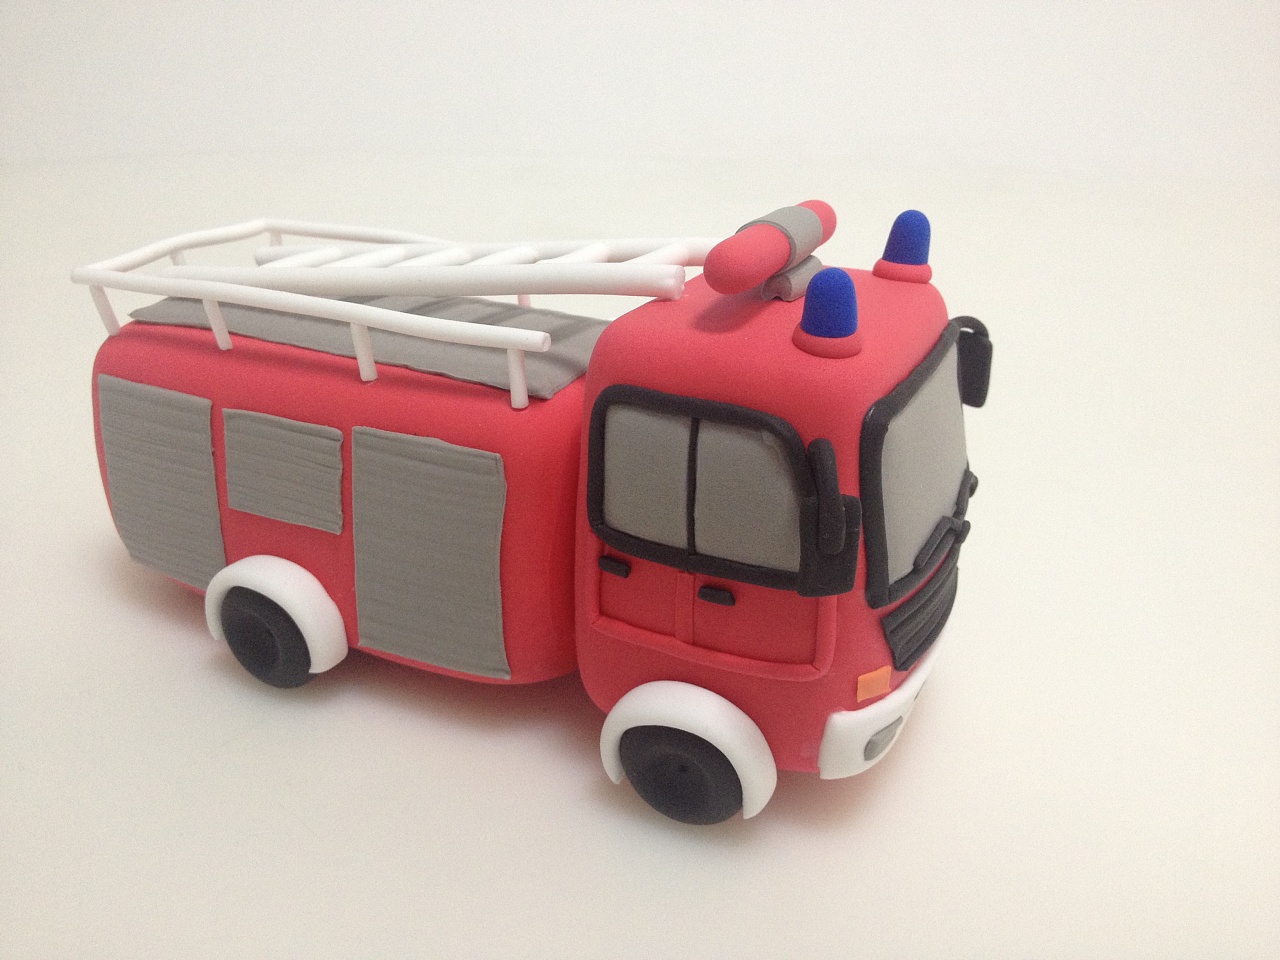 手工四驱车 DIY四驱车 科技小制作创意拼装玩具趣味科学实验套装-阿里巴巴